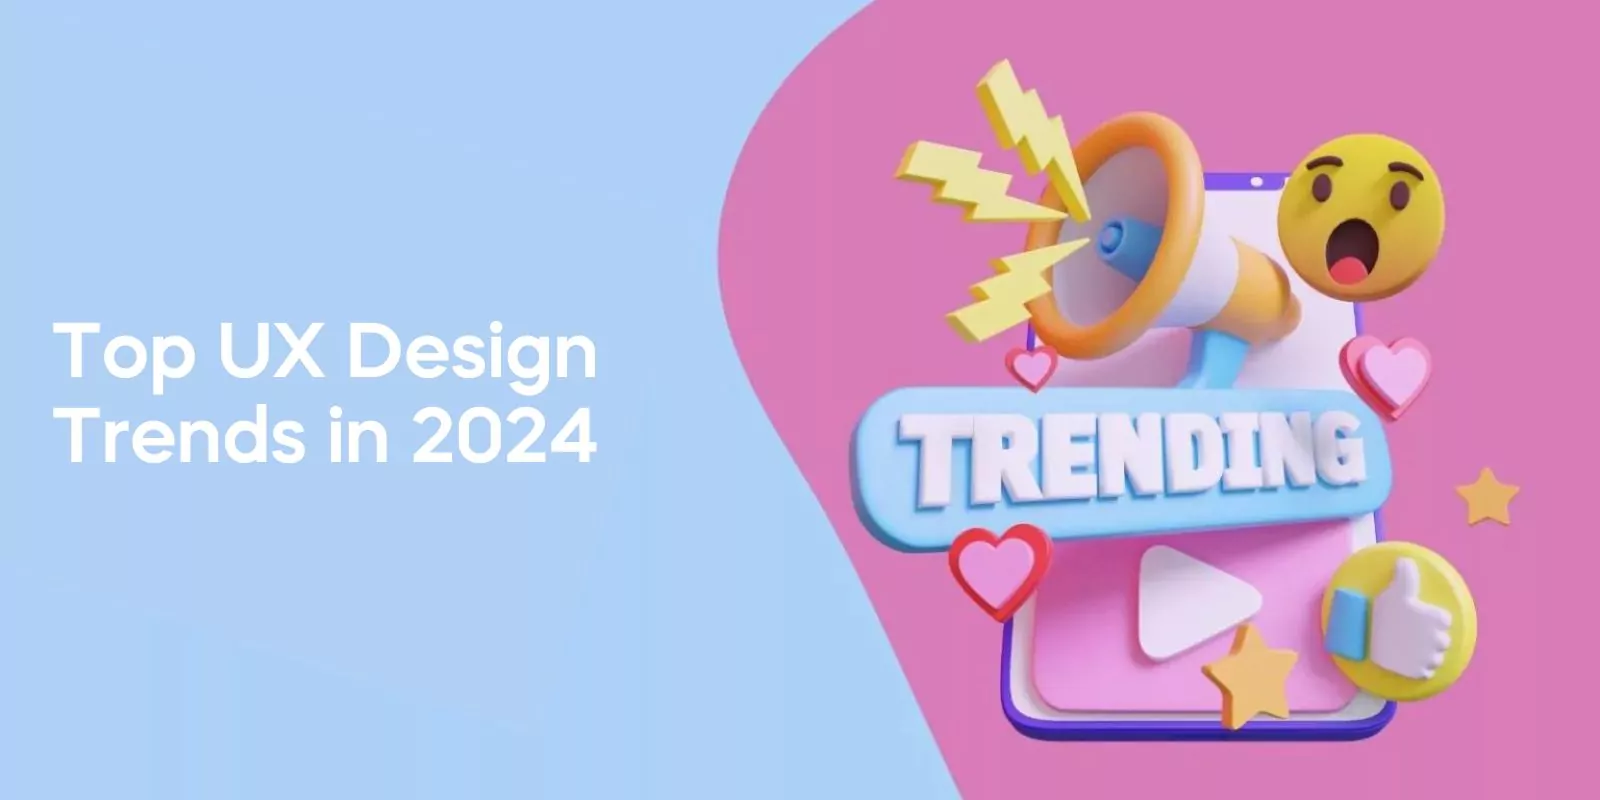 Top UX Design Trends in 2024